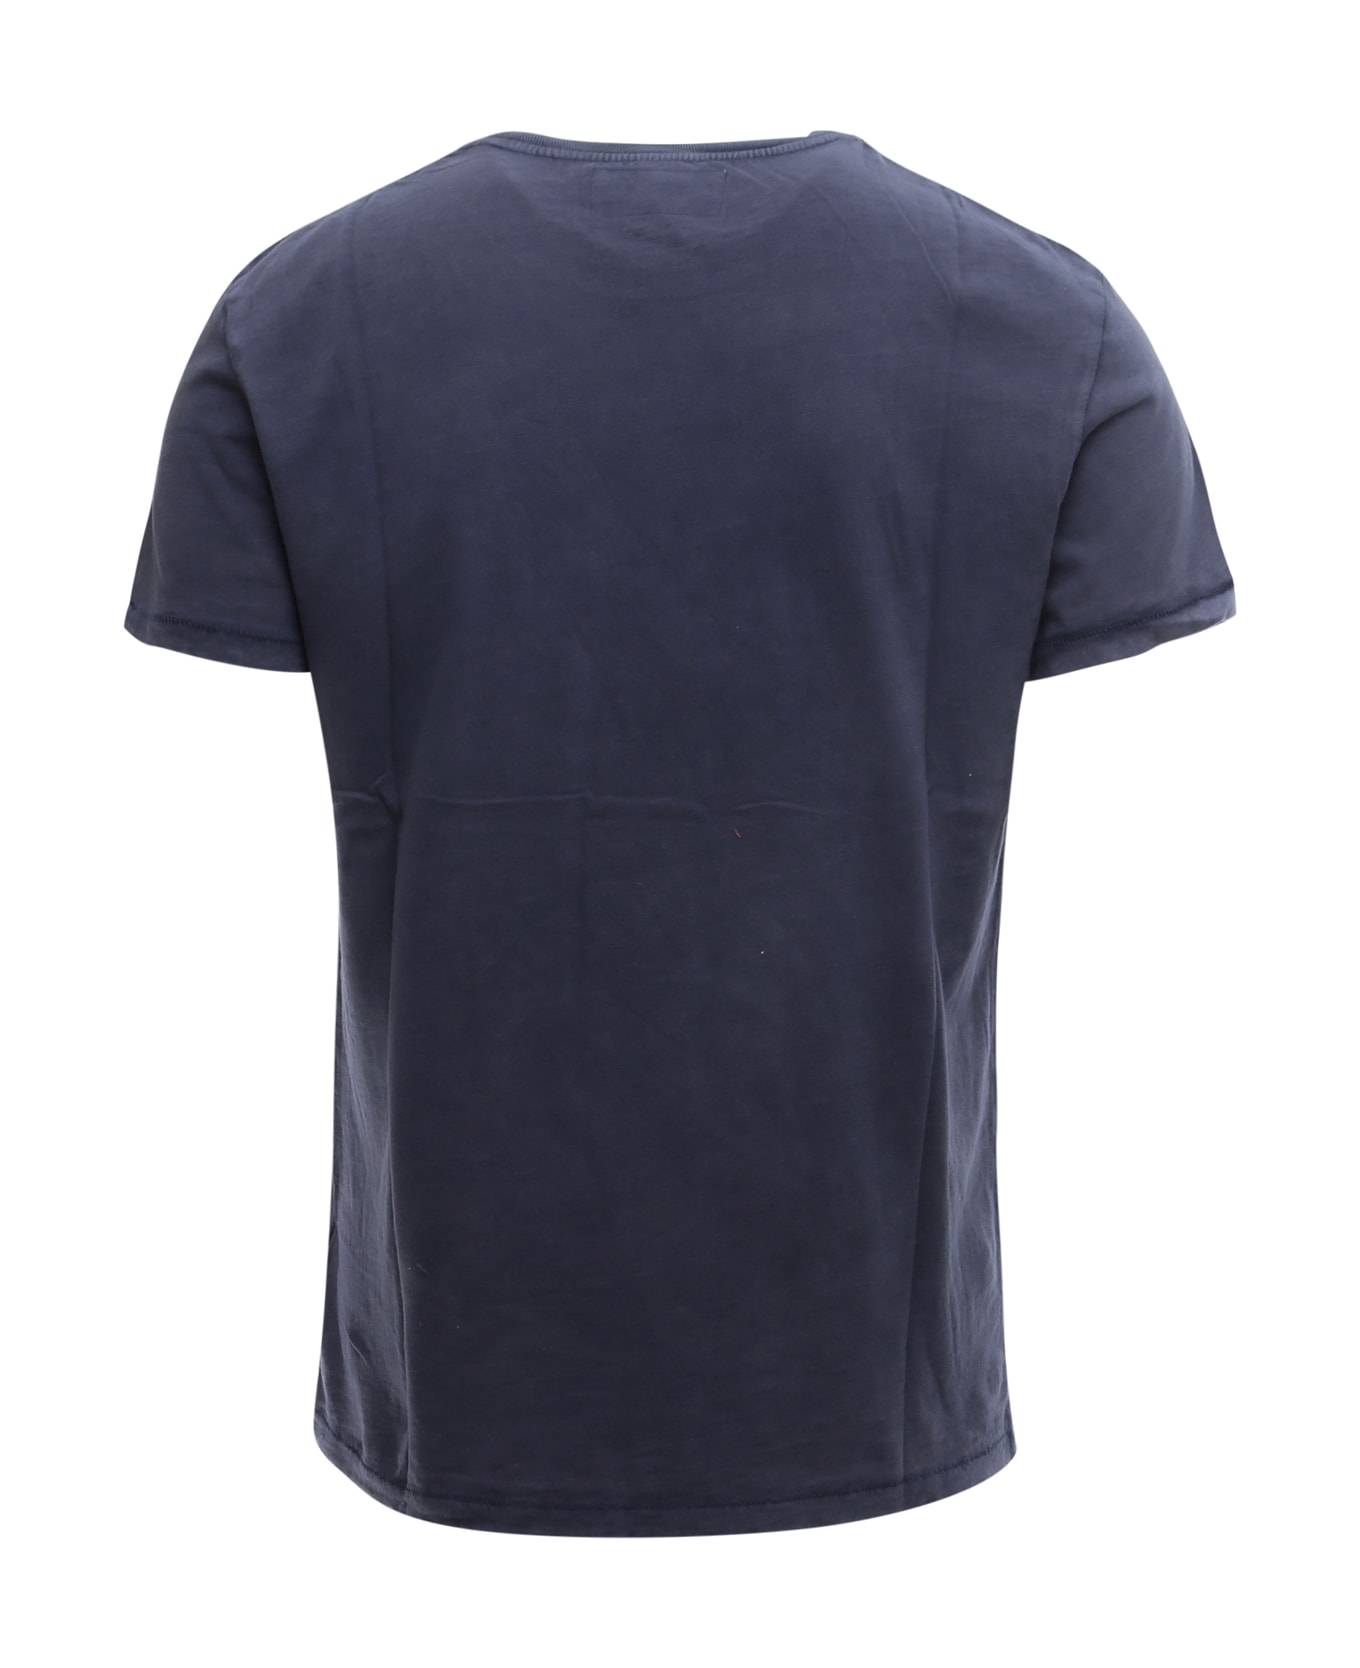 Ralph Lauren T-shirt - NAVY